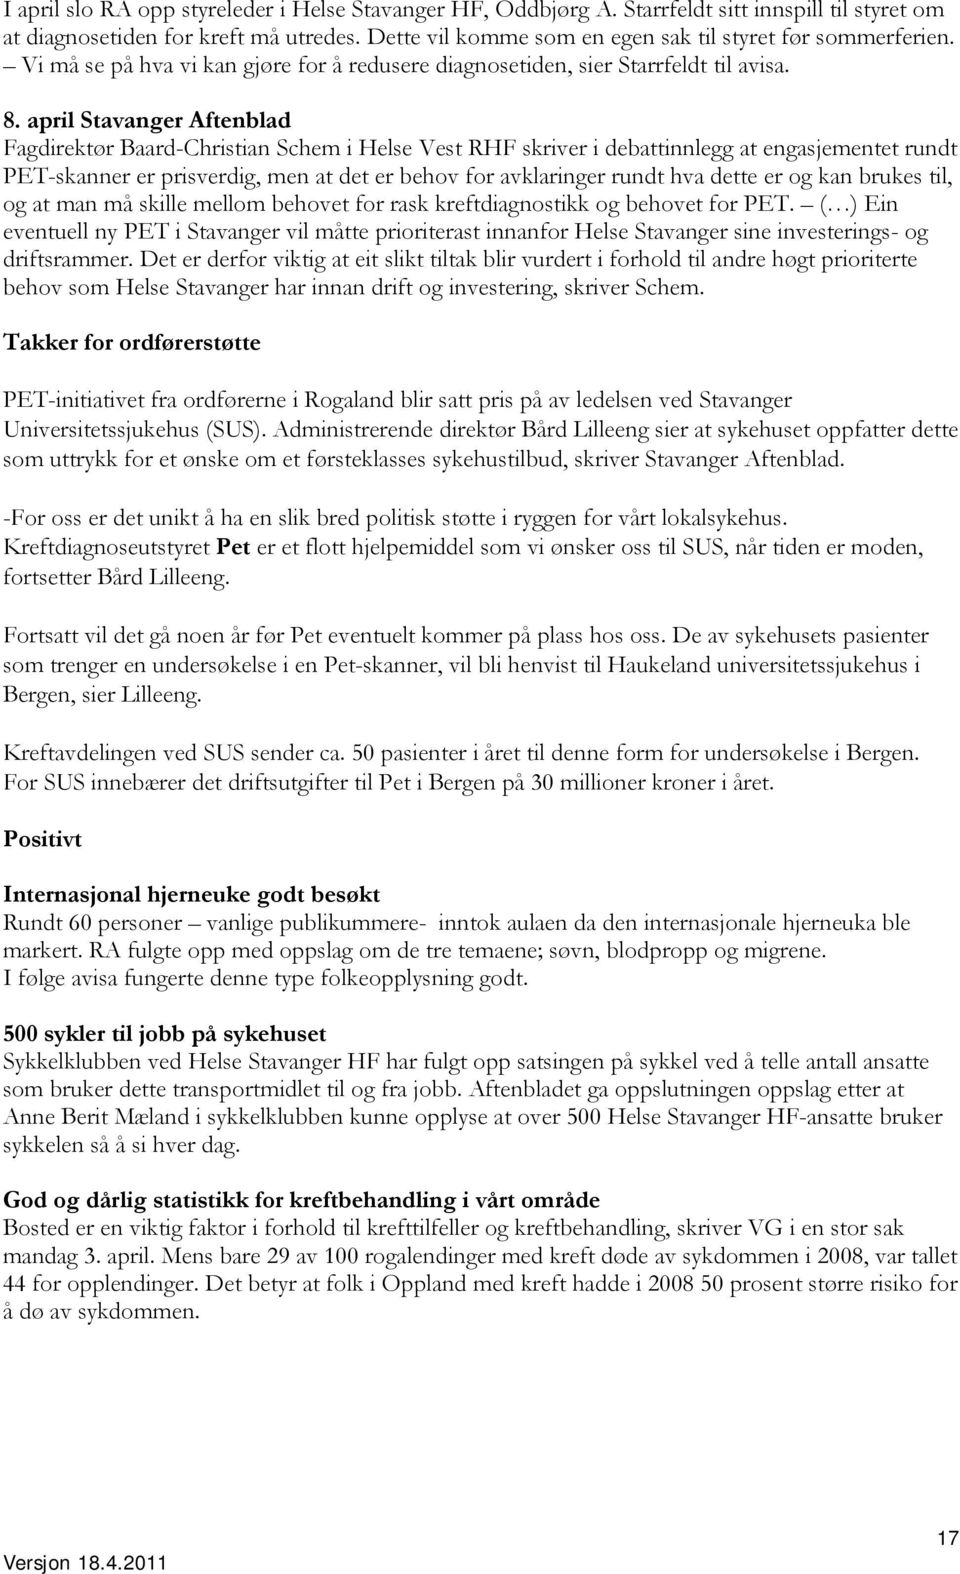 april Stavanger Aftenblad Fagdirektør Baard-Christian Schem i Helse Vest RHF skriver i debattinnlegg at engasjementet rundt PET-skanner er prisverdig, men at det er behov for avklaringer rundt hva